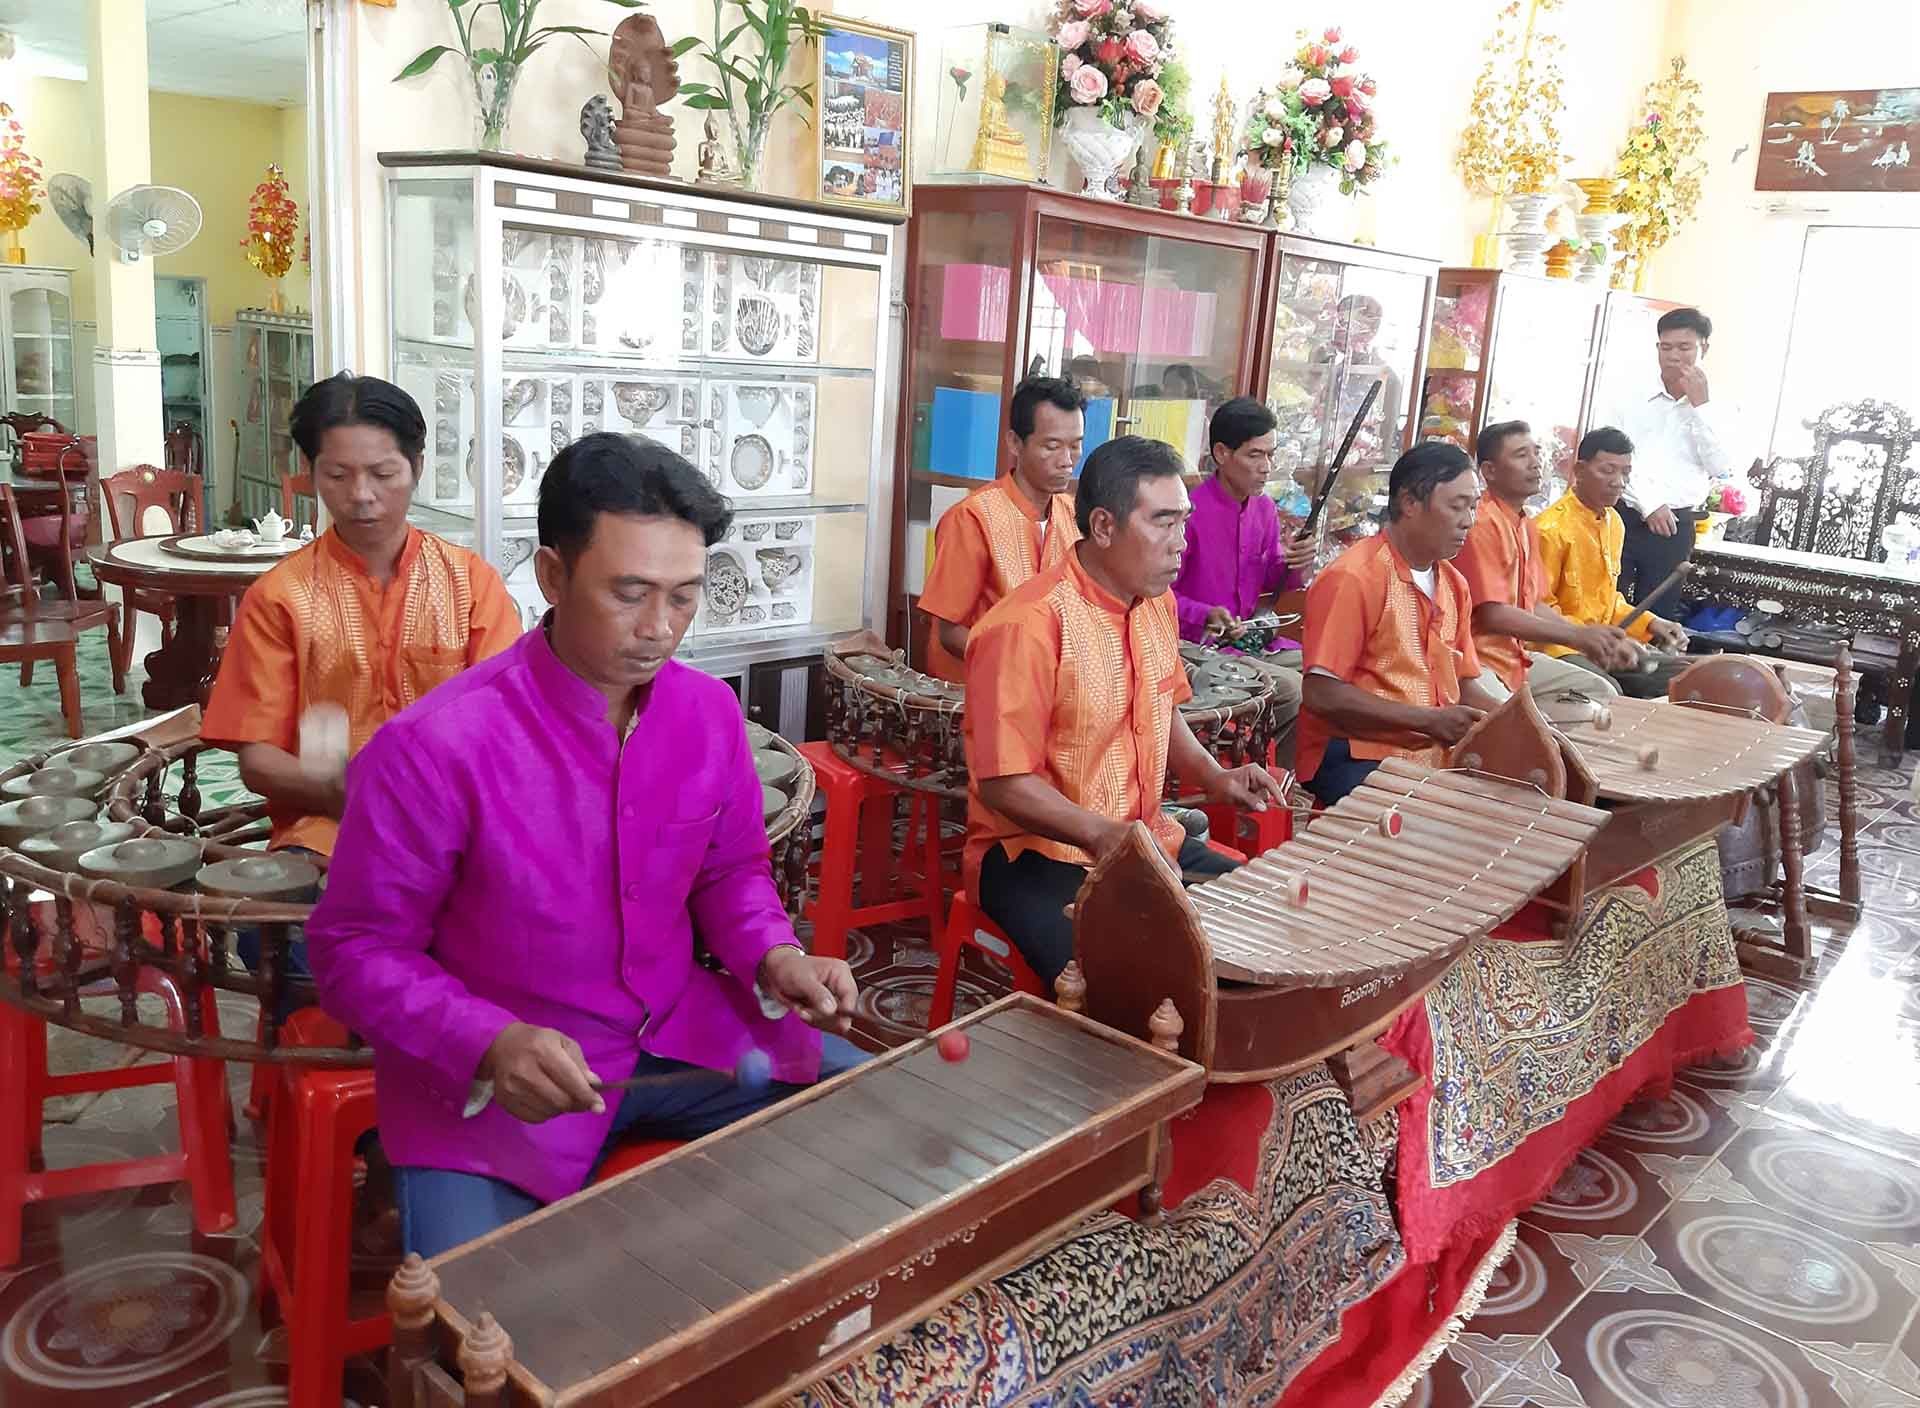 Đội nhạc ngũ âm chùa Chrôy Tưm Kandal (xã Đại Tâm, huyện Mỹ Xuyên) được Nghệ nhân ưu tú Danh Sol truyền dạy, biểu diễn phục vụ du khách đến tham quan, chiêm ngưỡng chùa. (Ảnh: Phương Nghi)